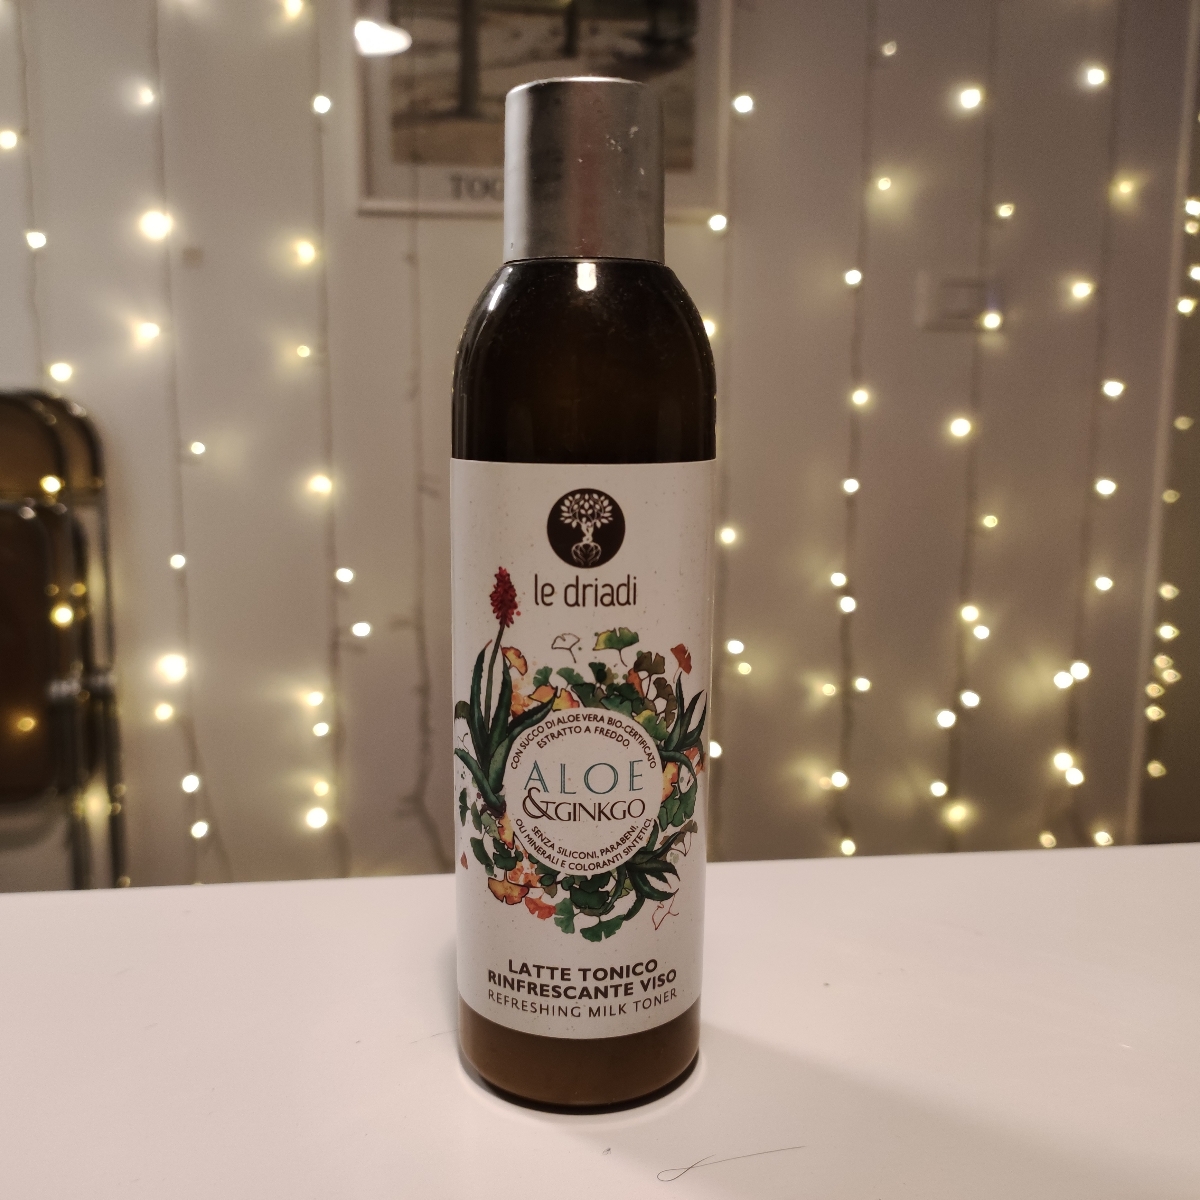 Le driadi Aloe e ginko Latte Tonico Rinfrescante Viso Reviews | abillion